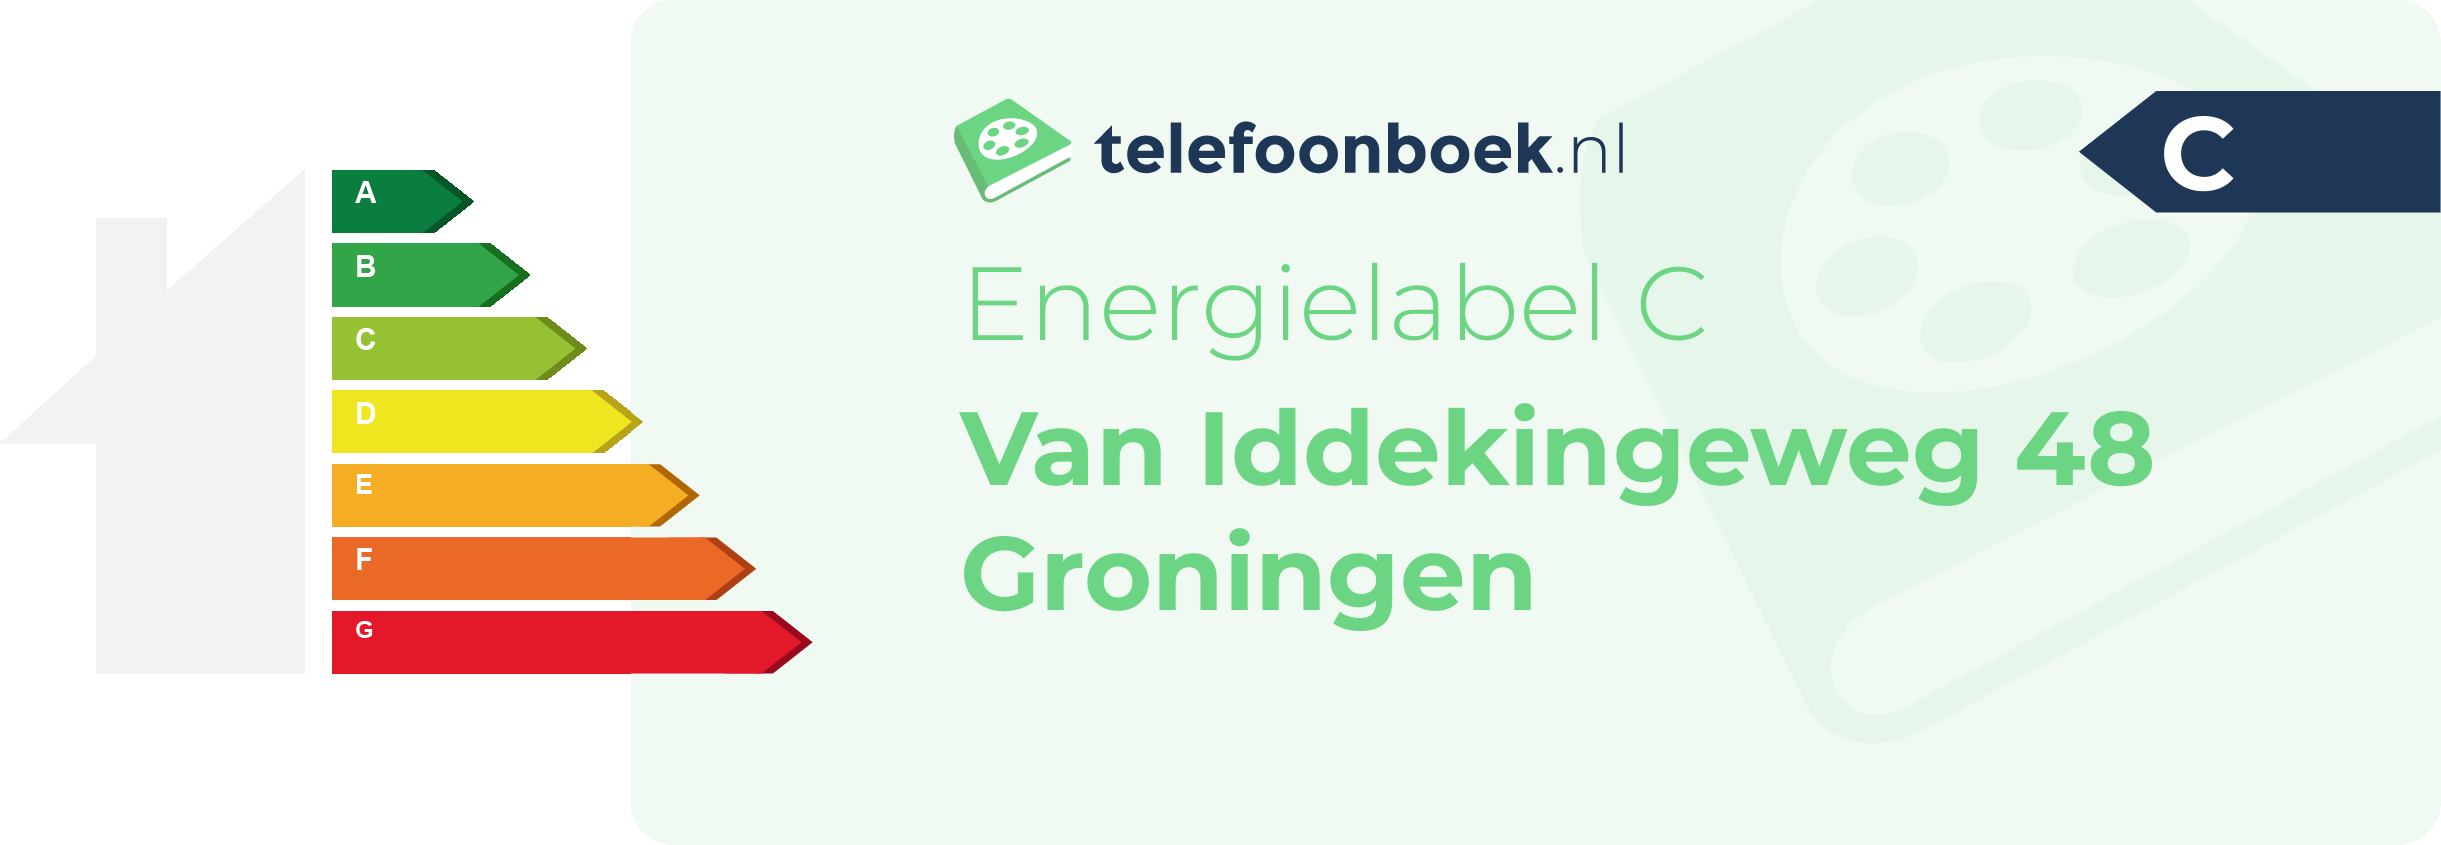 Energielabel Van Iddekingeweg 48 Groningen